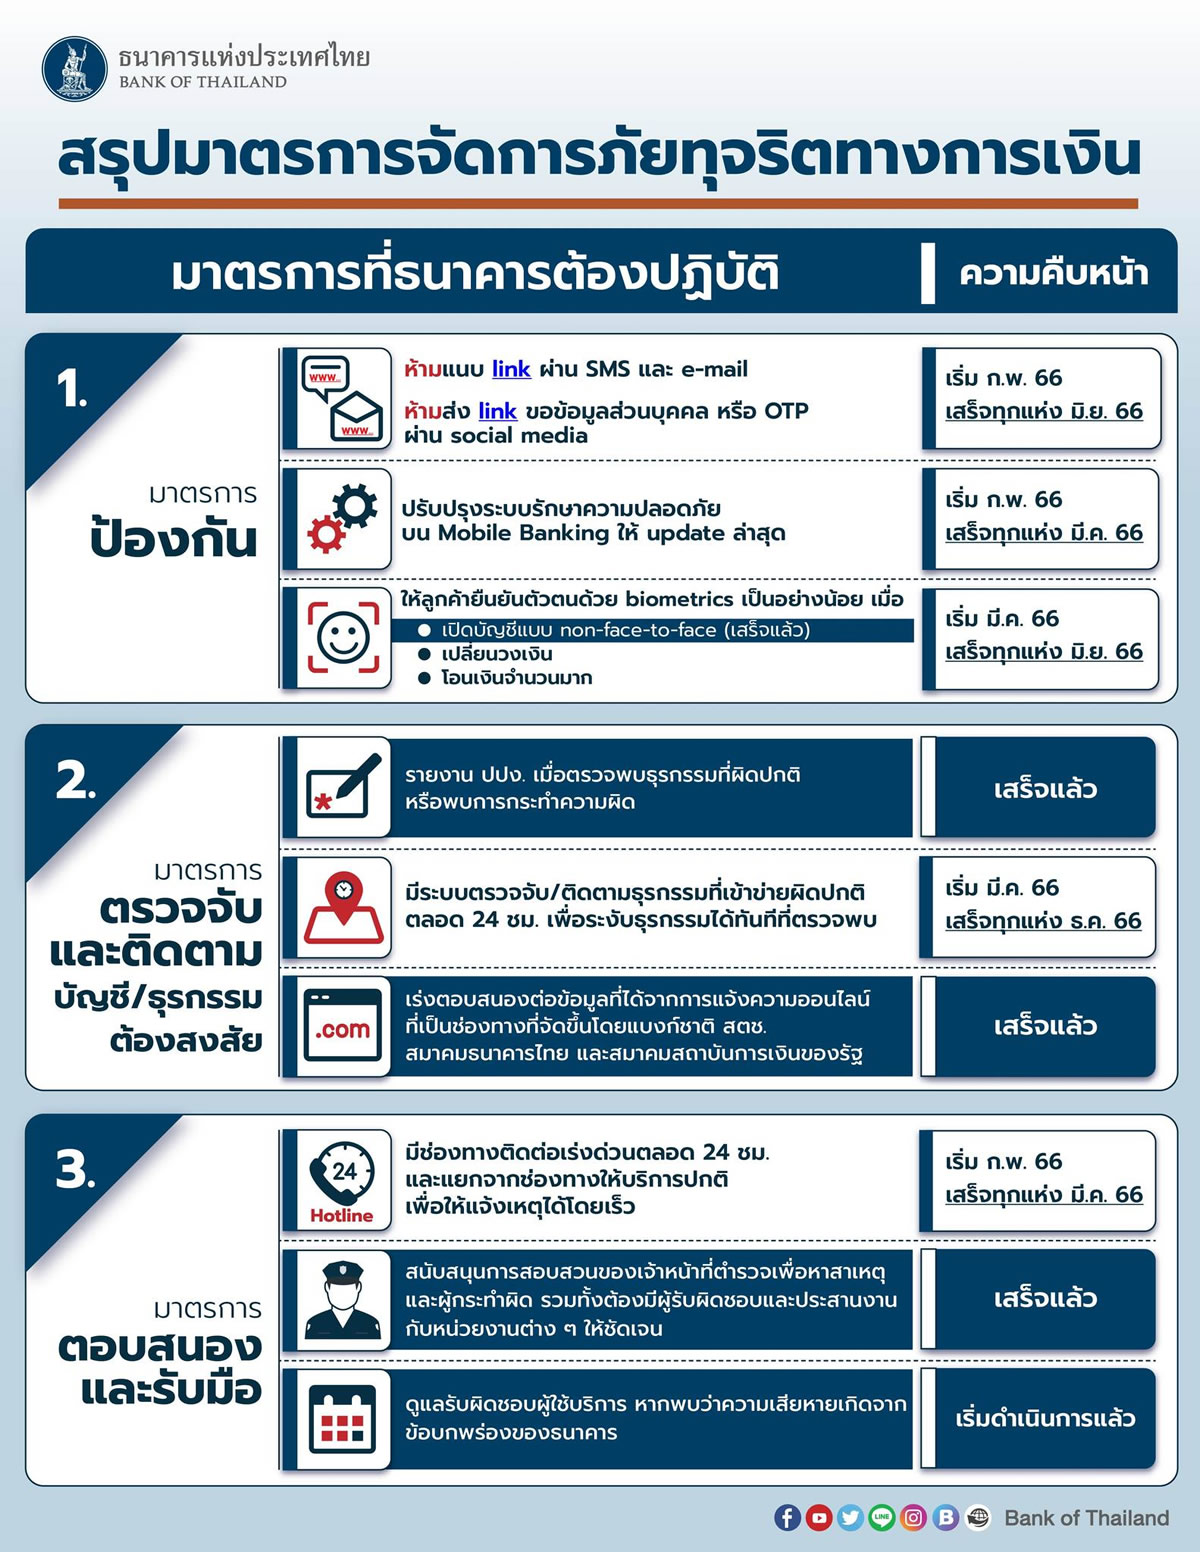 タイ中央銀行 (BoT) 、モバイルバンキング詐欺対策を発表